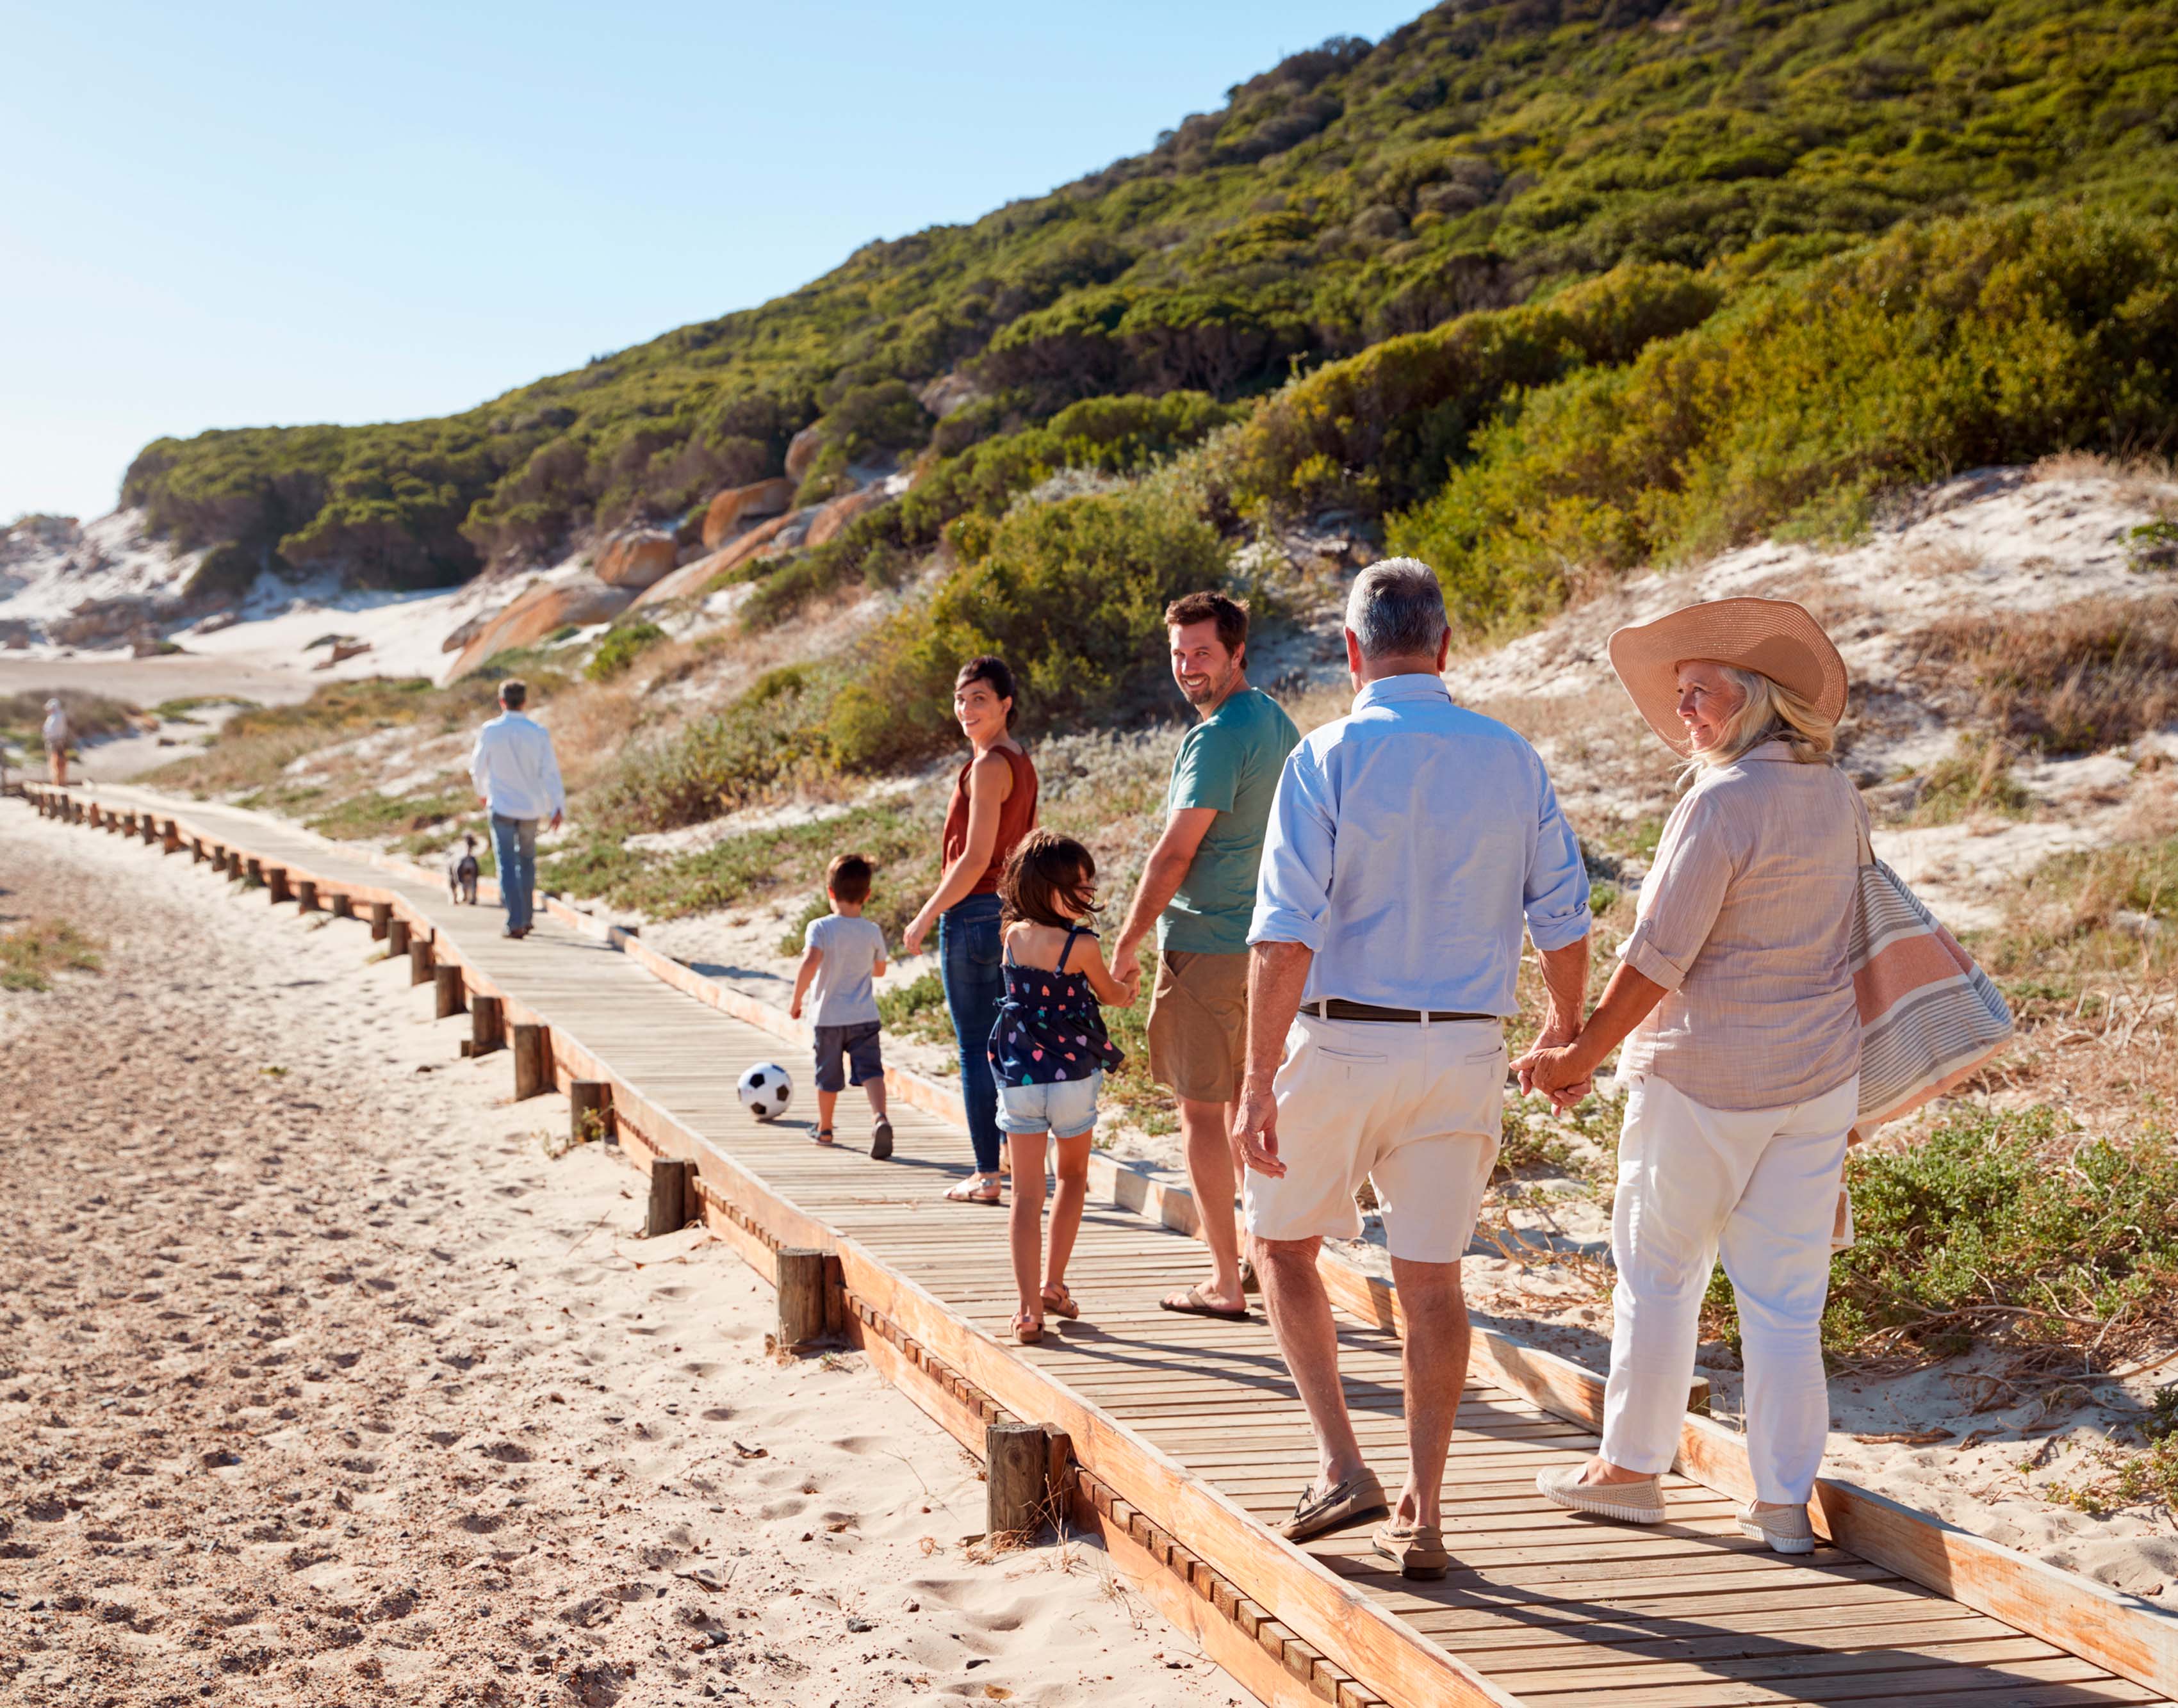 Abuelos y familia en playa vista de espaldas caminando sobre un puente de madera